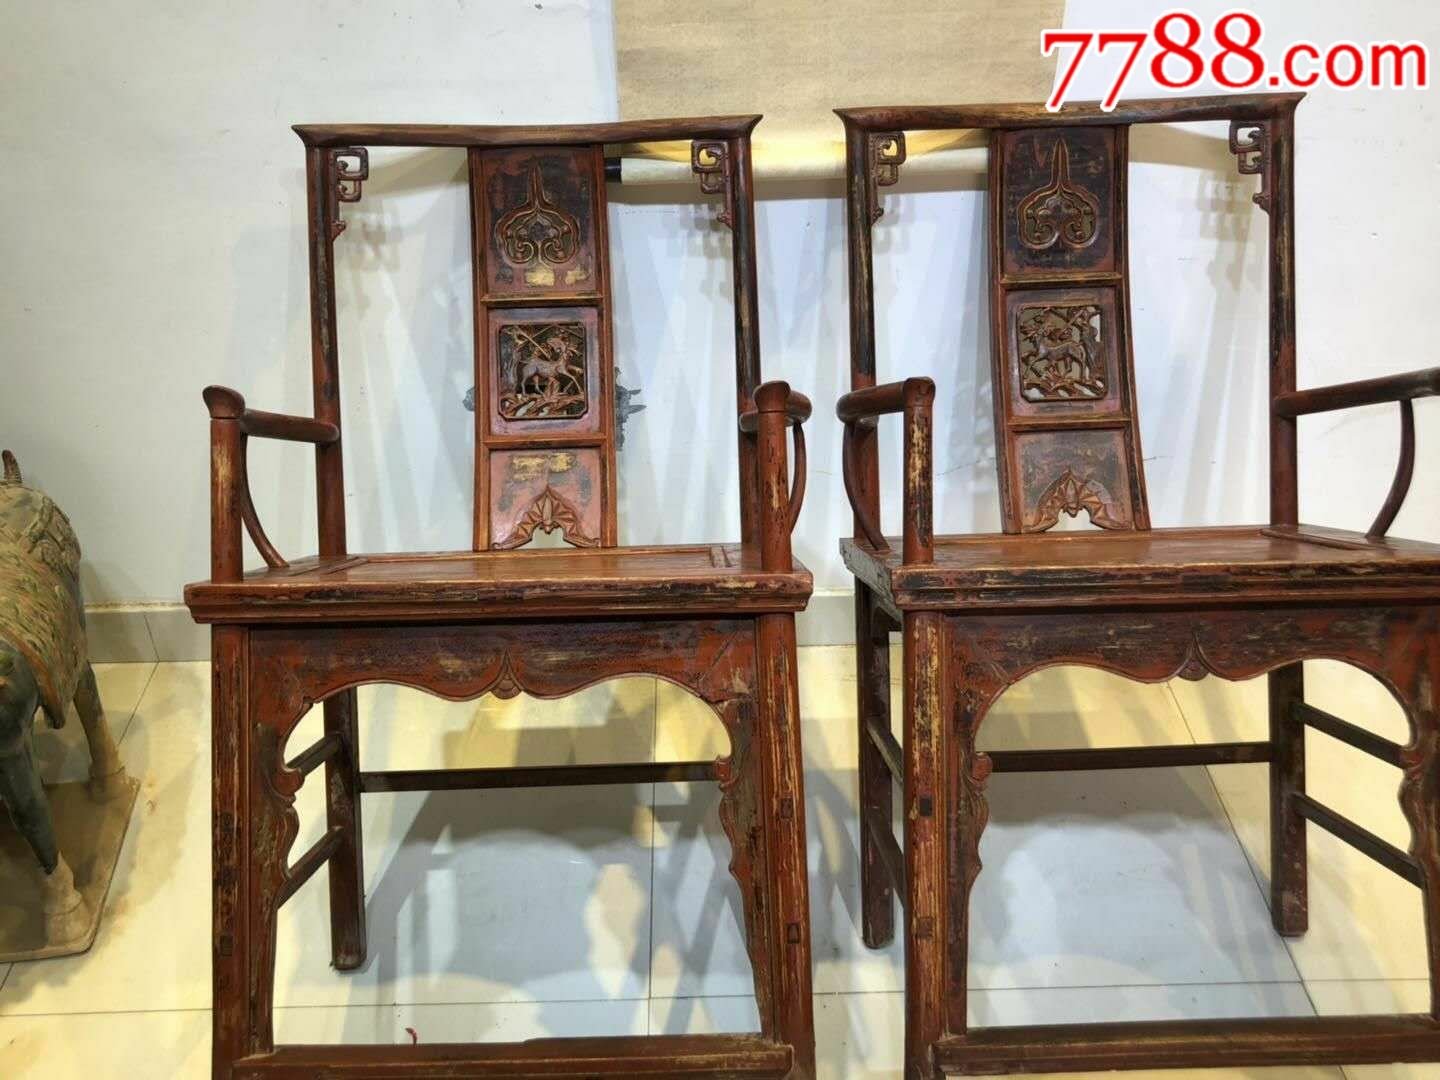 榆木太师椅老椅子老家具古典家具古董椅子$16,0009品99民国时期红木